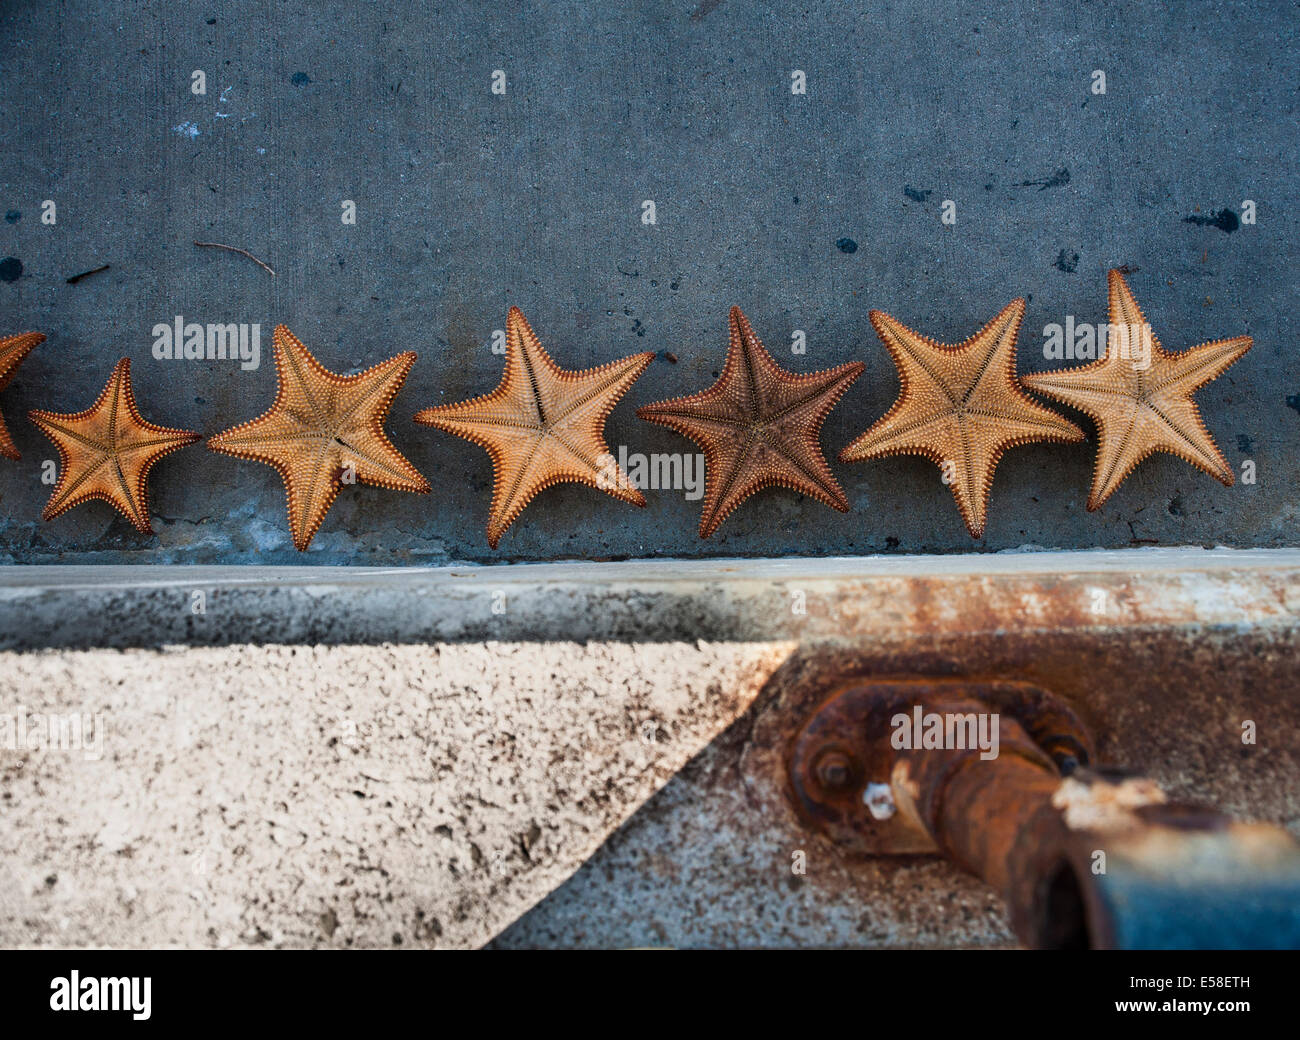 Six starfish lay drying on ground Stock Photo